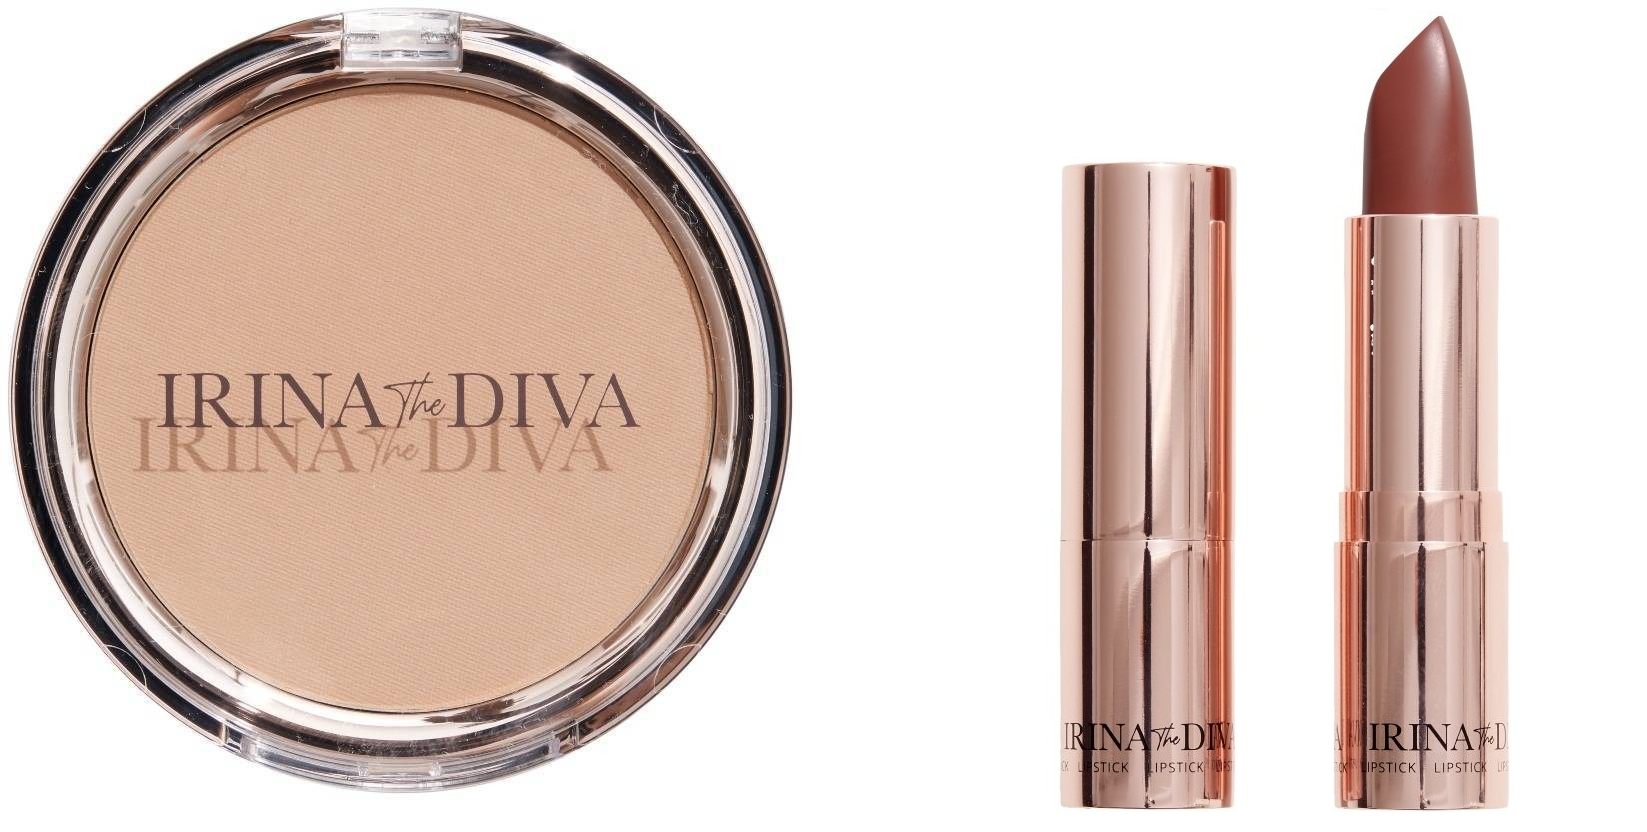 Irina The Diva - Lipstick 006 WITCH KISS + Filter Matte Bronzing Powder Natural Beauty 001 - Skjønnhet